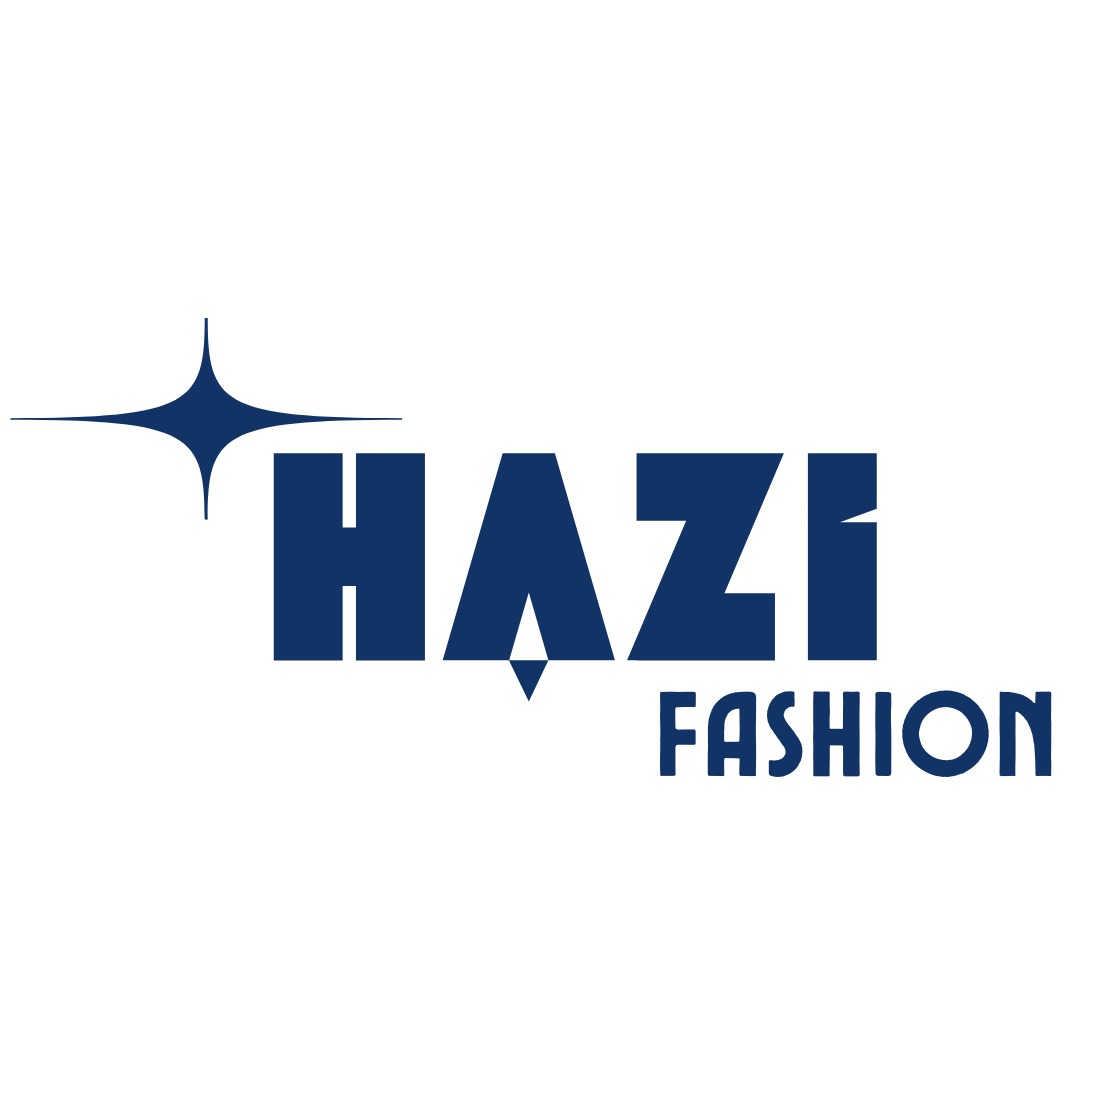 HAZI FASHION